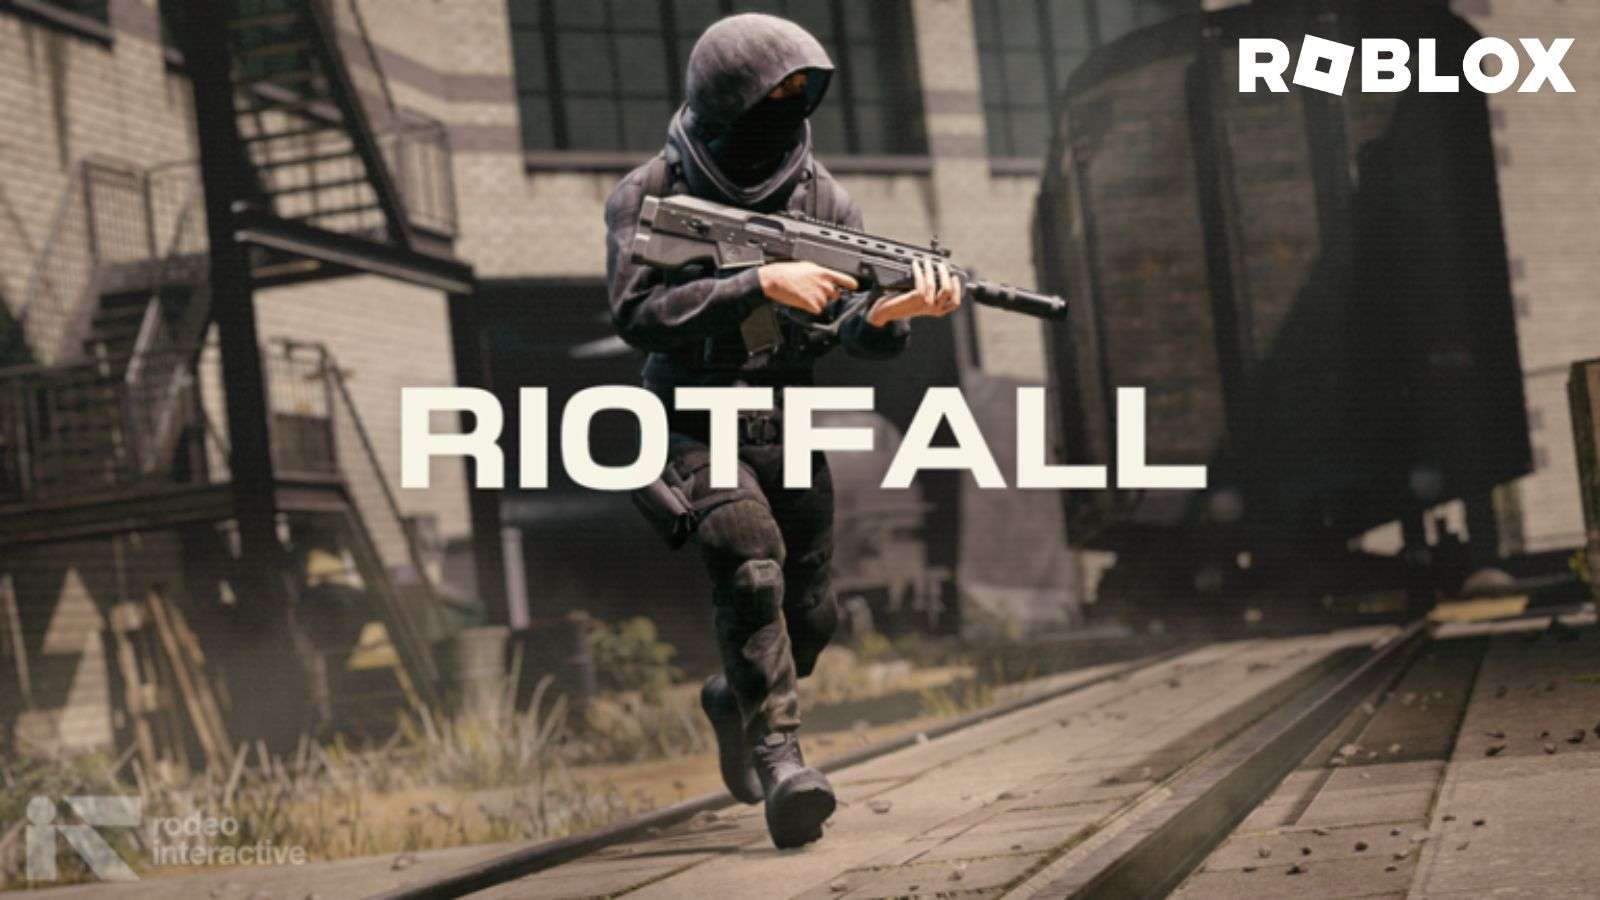 Le jeu Roblox Riotfall, inspiré de Call of Duty